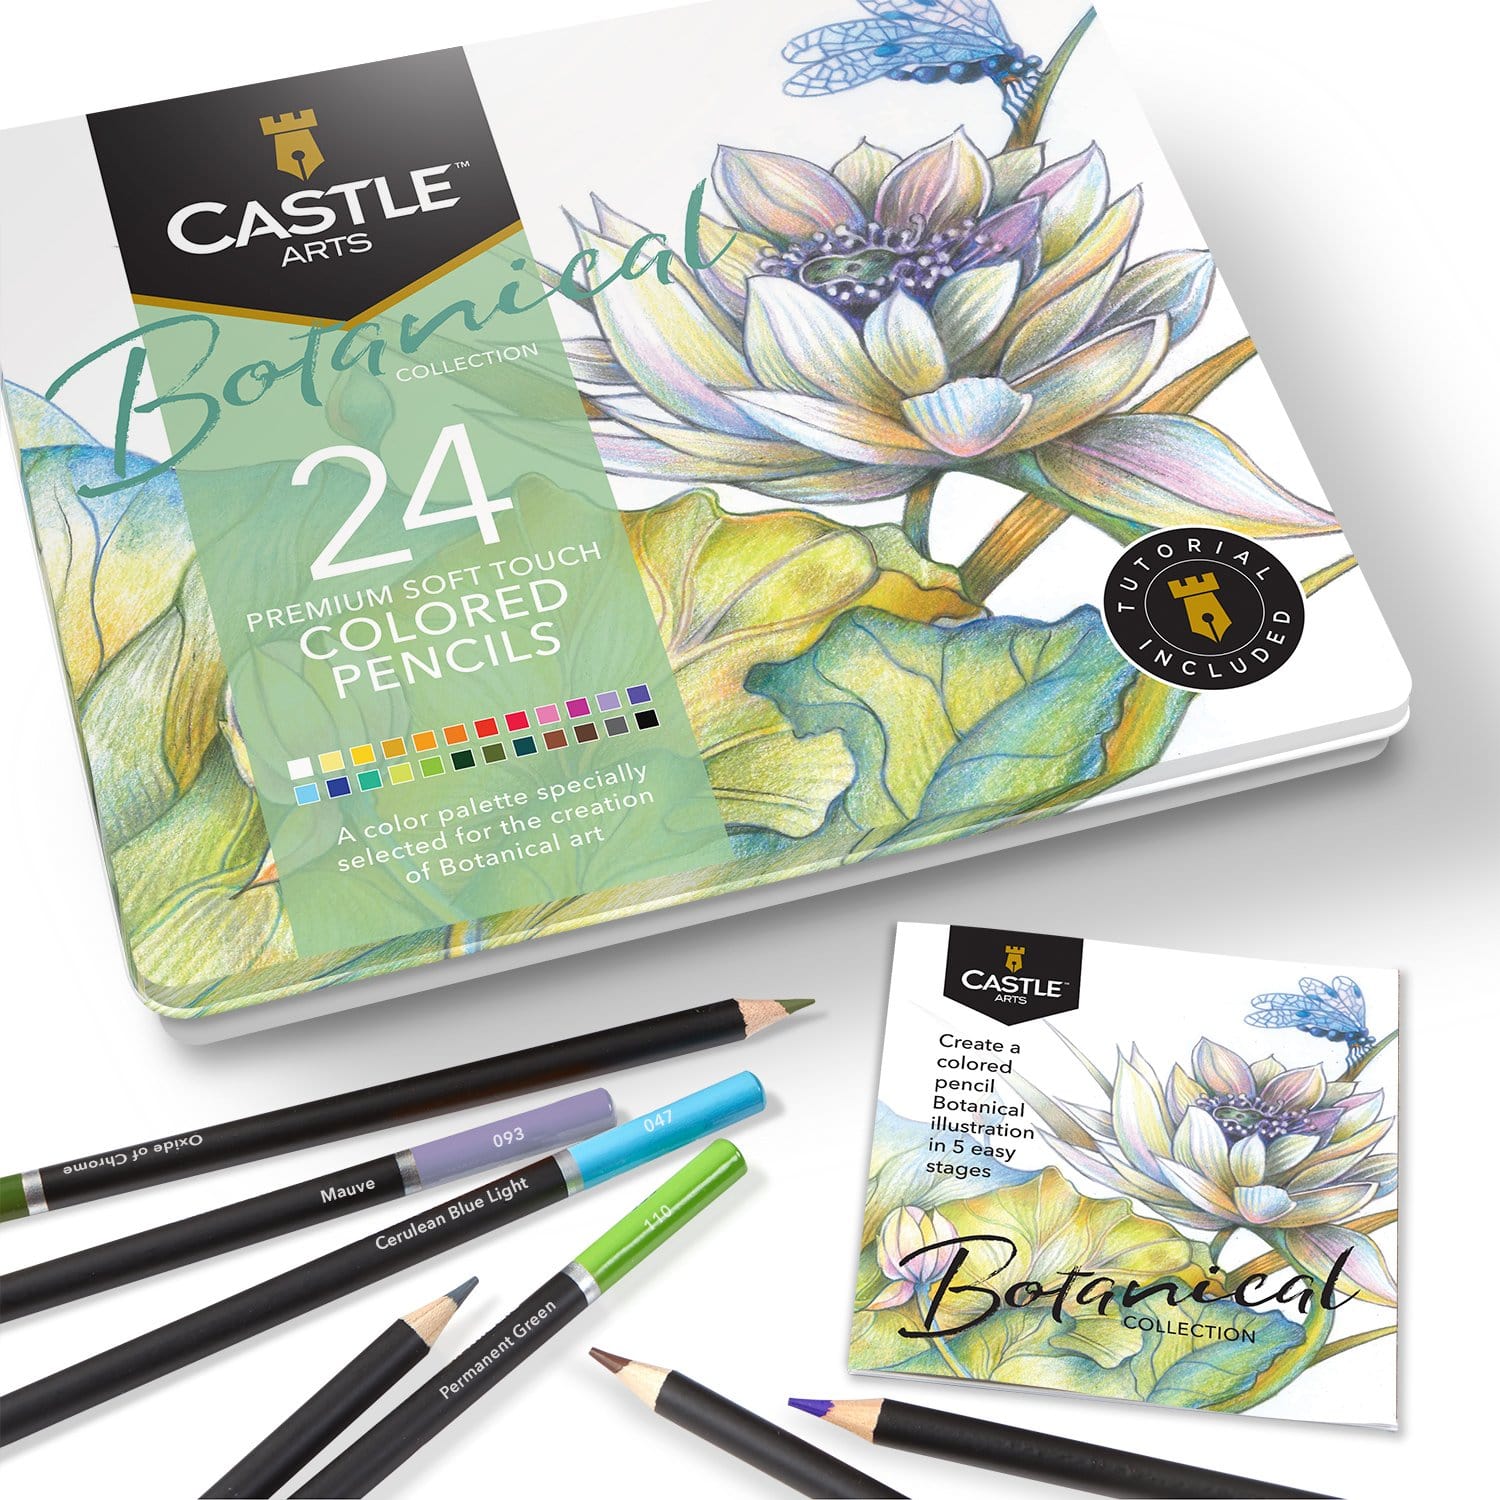 Are Castle Arts Colored Pencils Worth It?